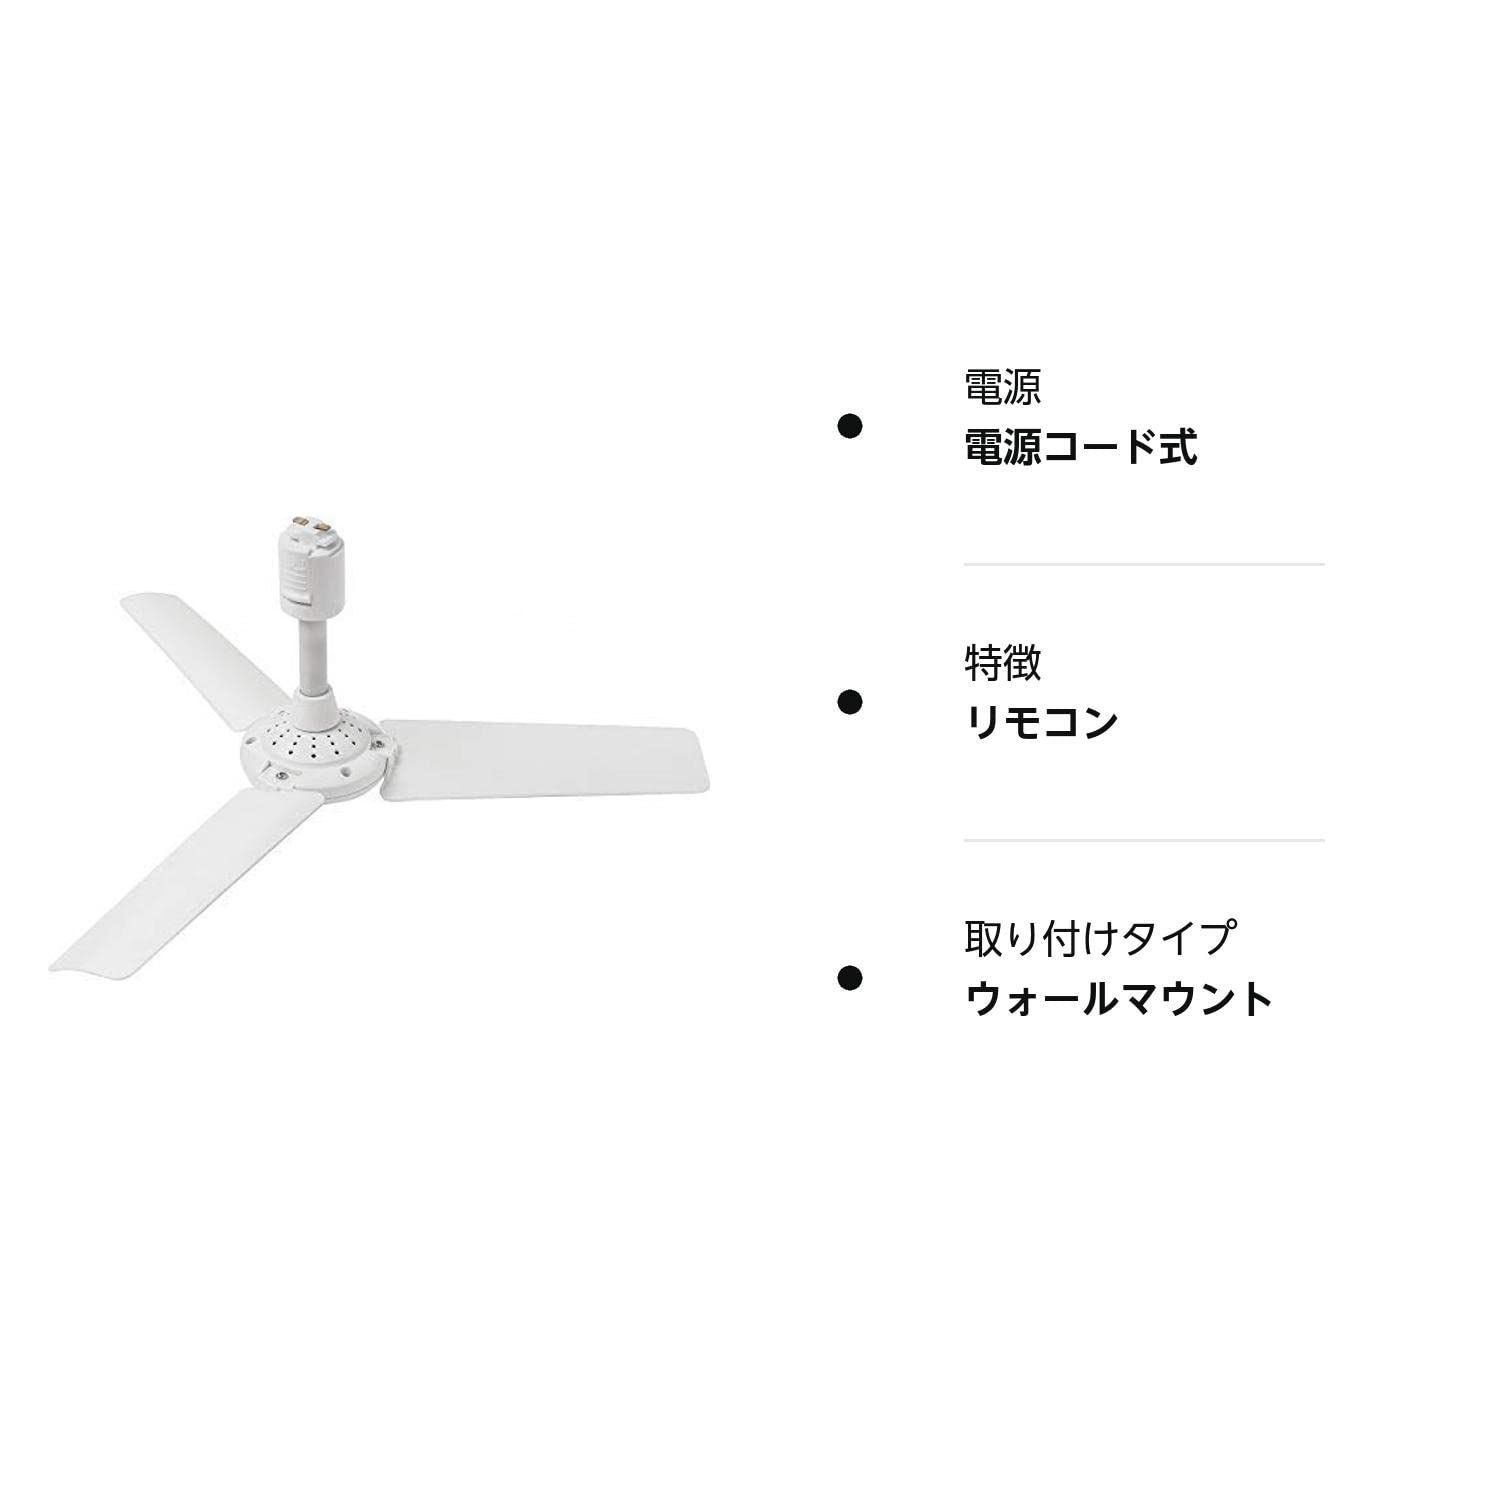 特価商品】(1) (ホワイト) 003276 FAN 調光器非対応 RAIL DUCT 扇風機